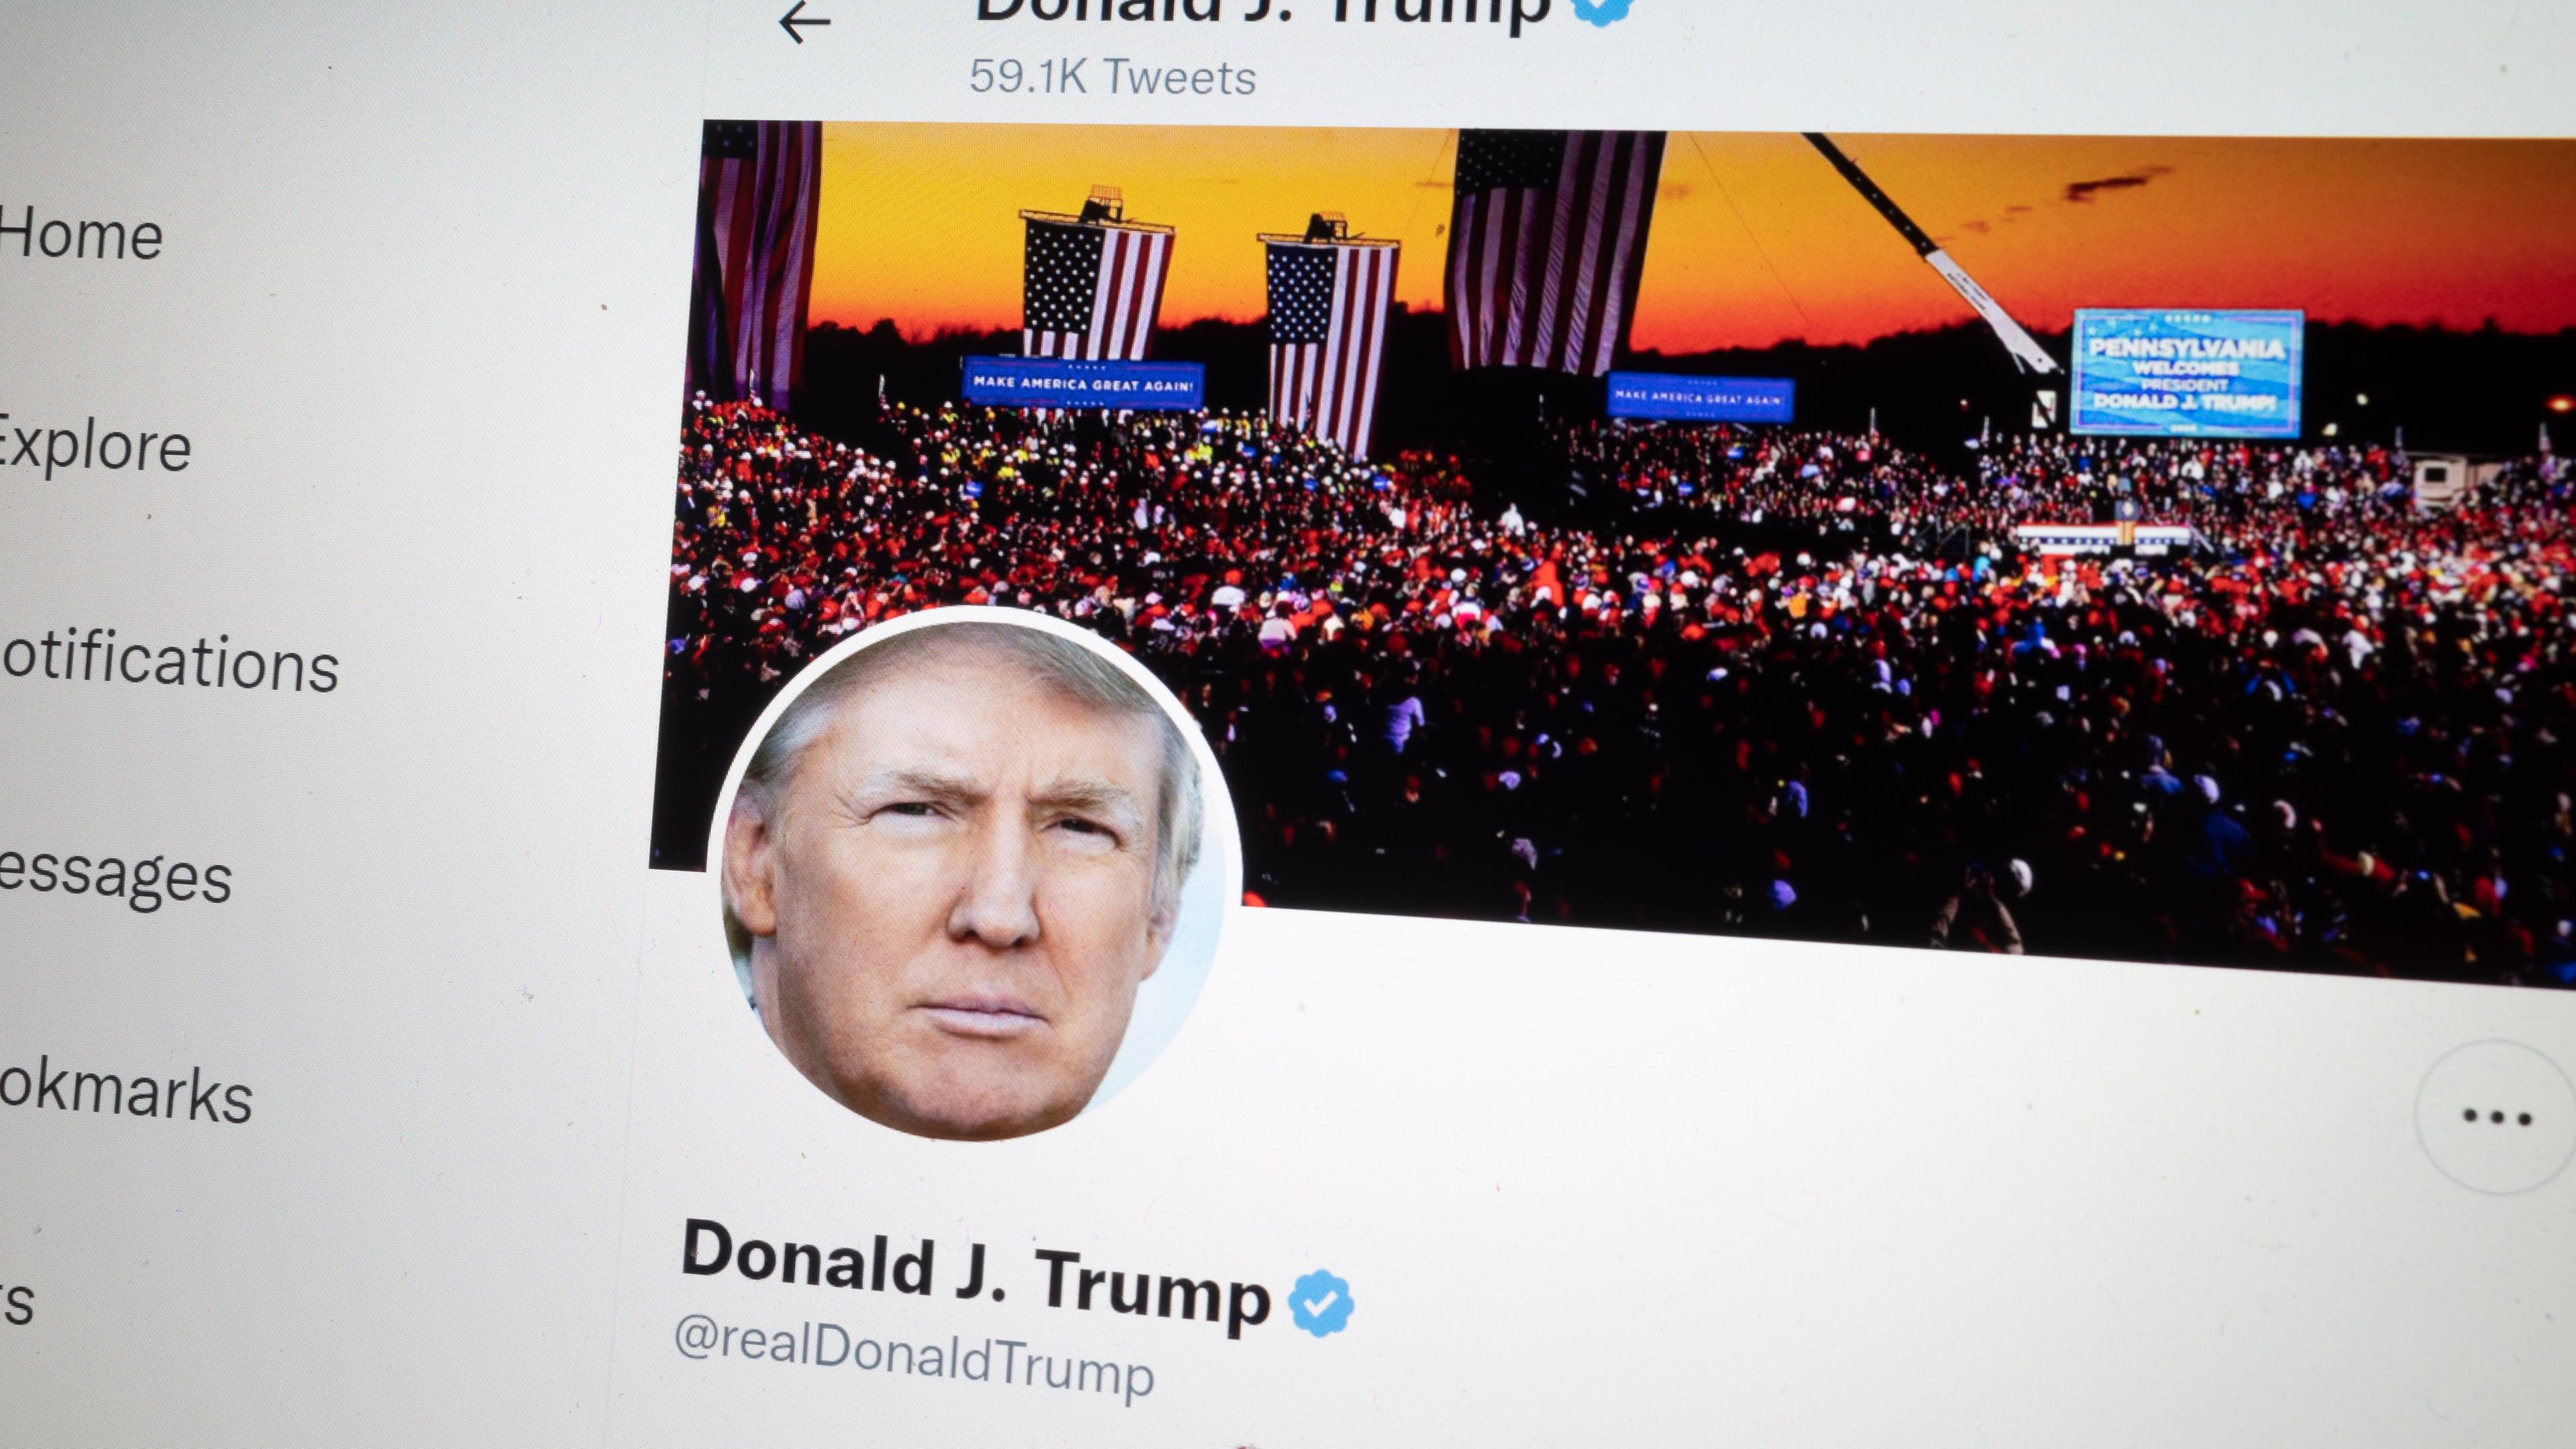 USA, San Francisco: Das Bild zeigt den Account des ehemaligen US-Präsidenten Trump auf Twitter.